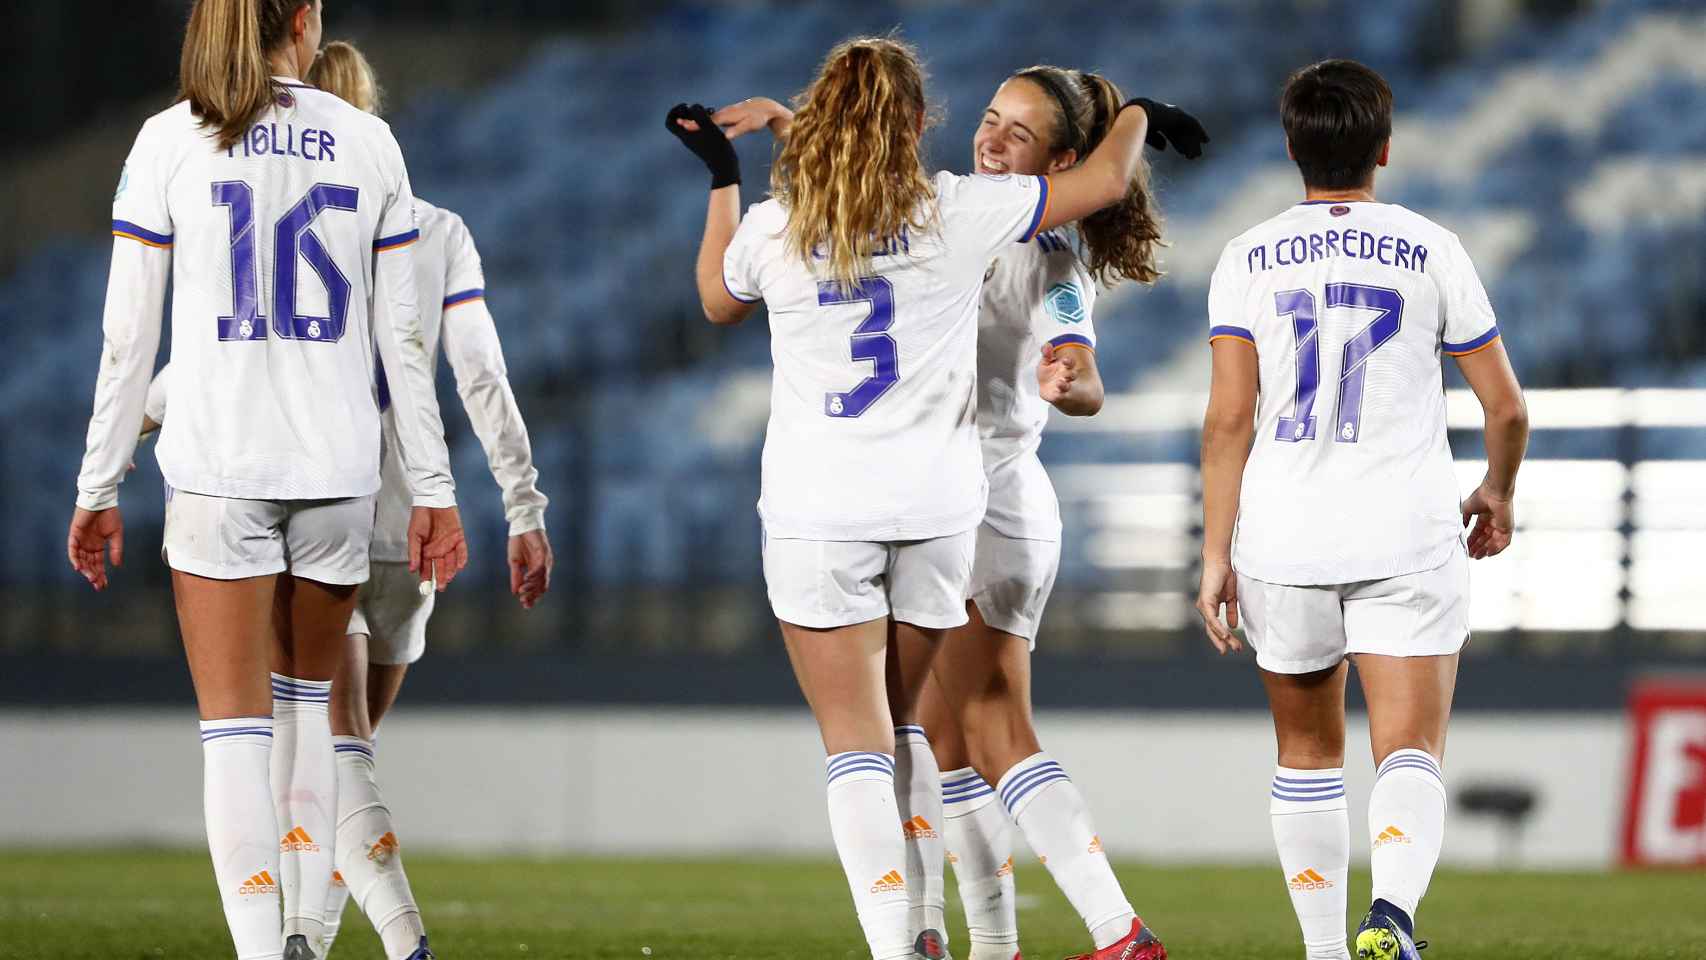 Tere Abelleira felicita a Maite Oroz por su gol en la Women's Champions League